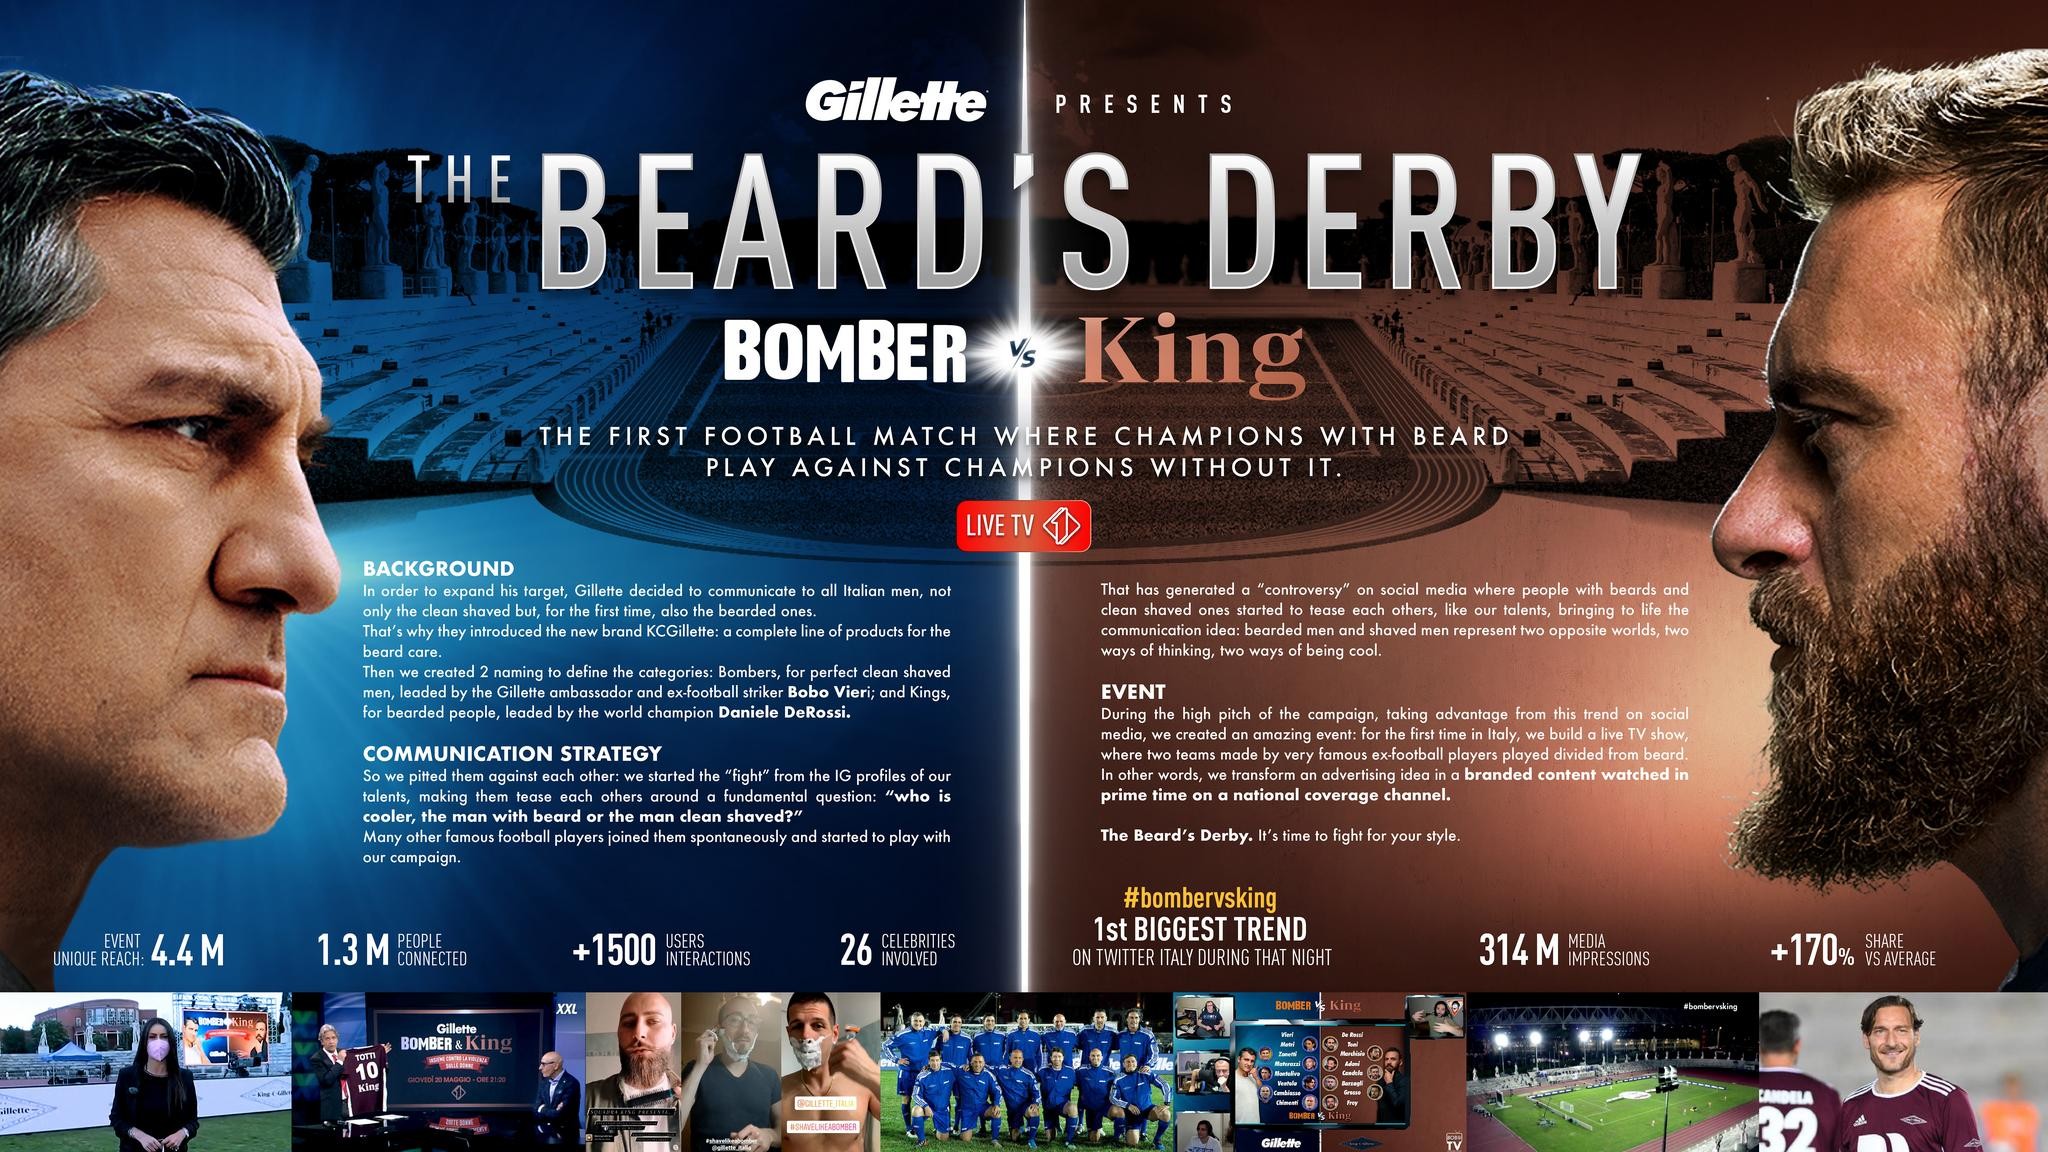 The Beard's Derby: Bomber vs King